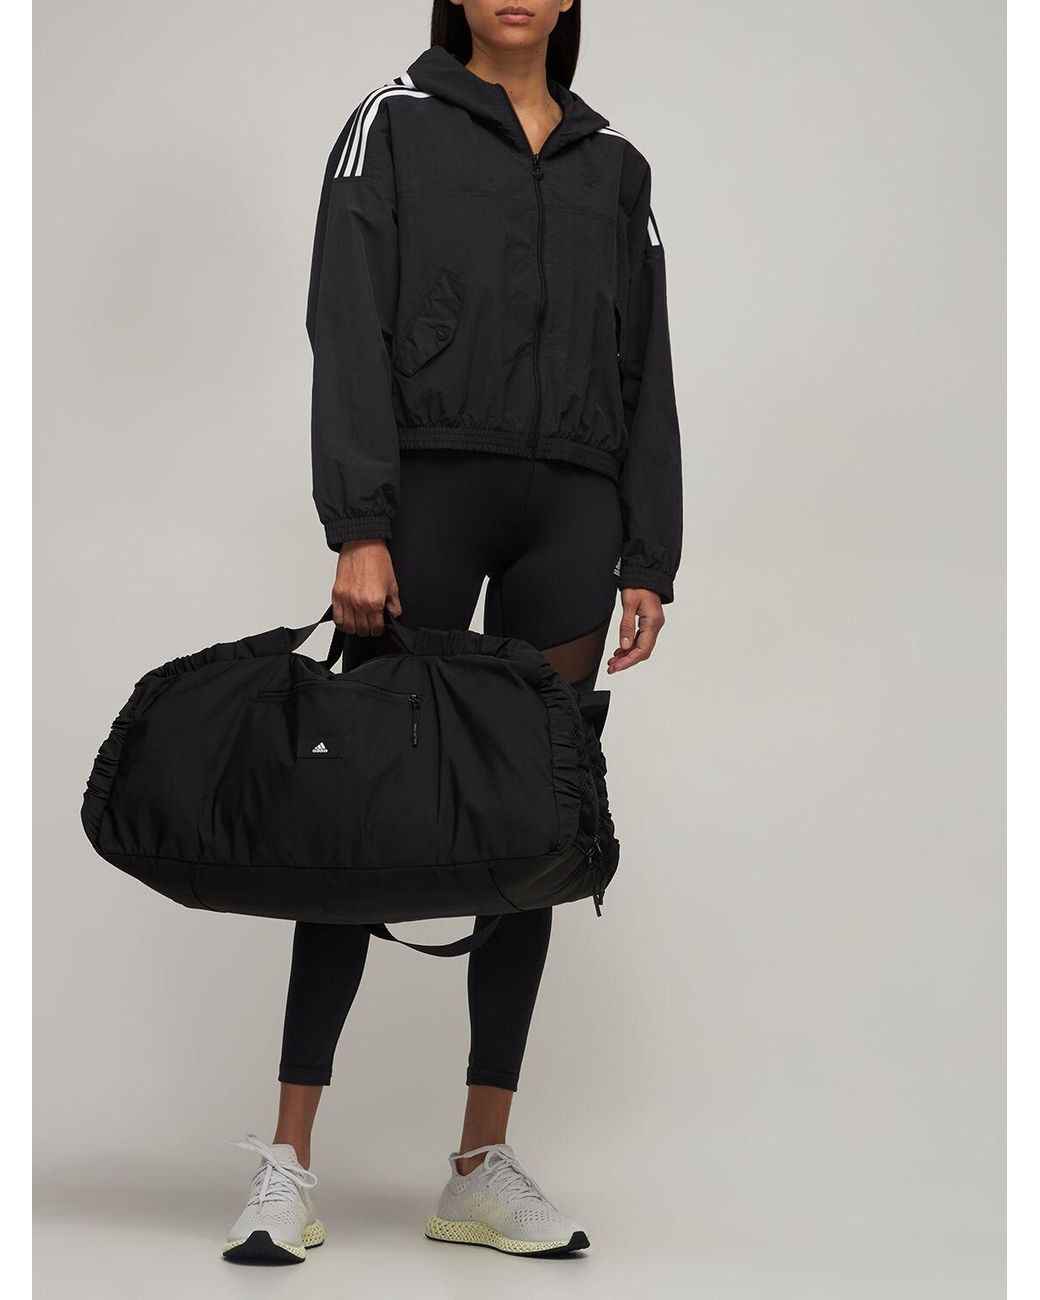 adidas Originals Yoga Studio Earth Duffle Bag in Black